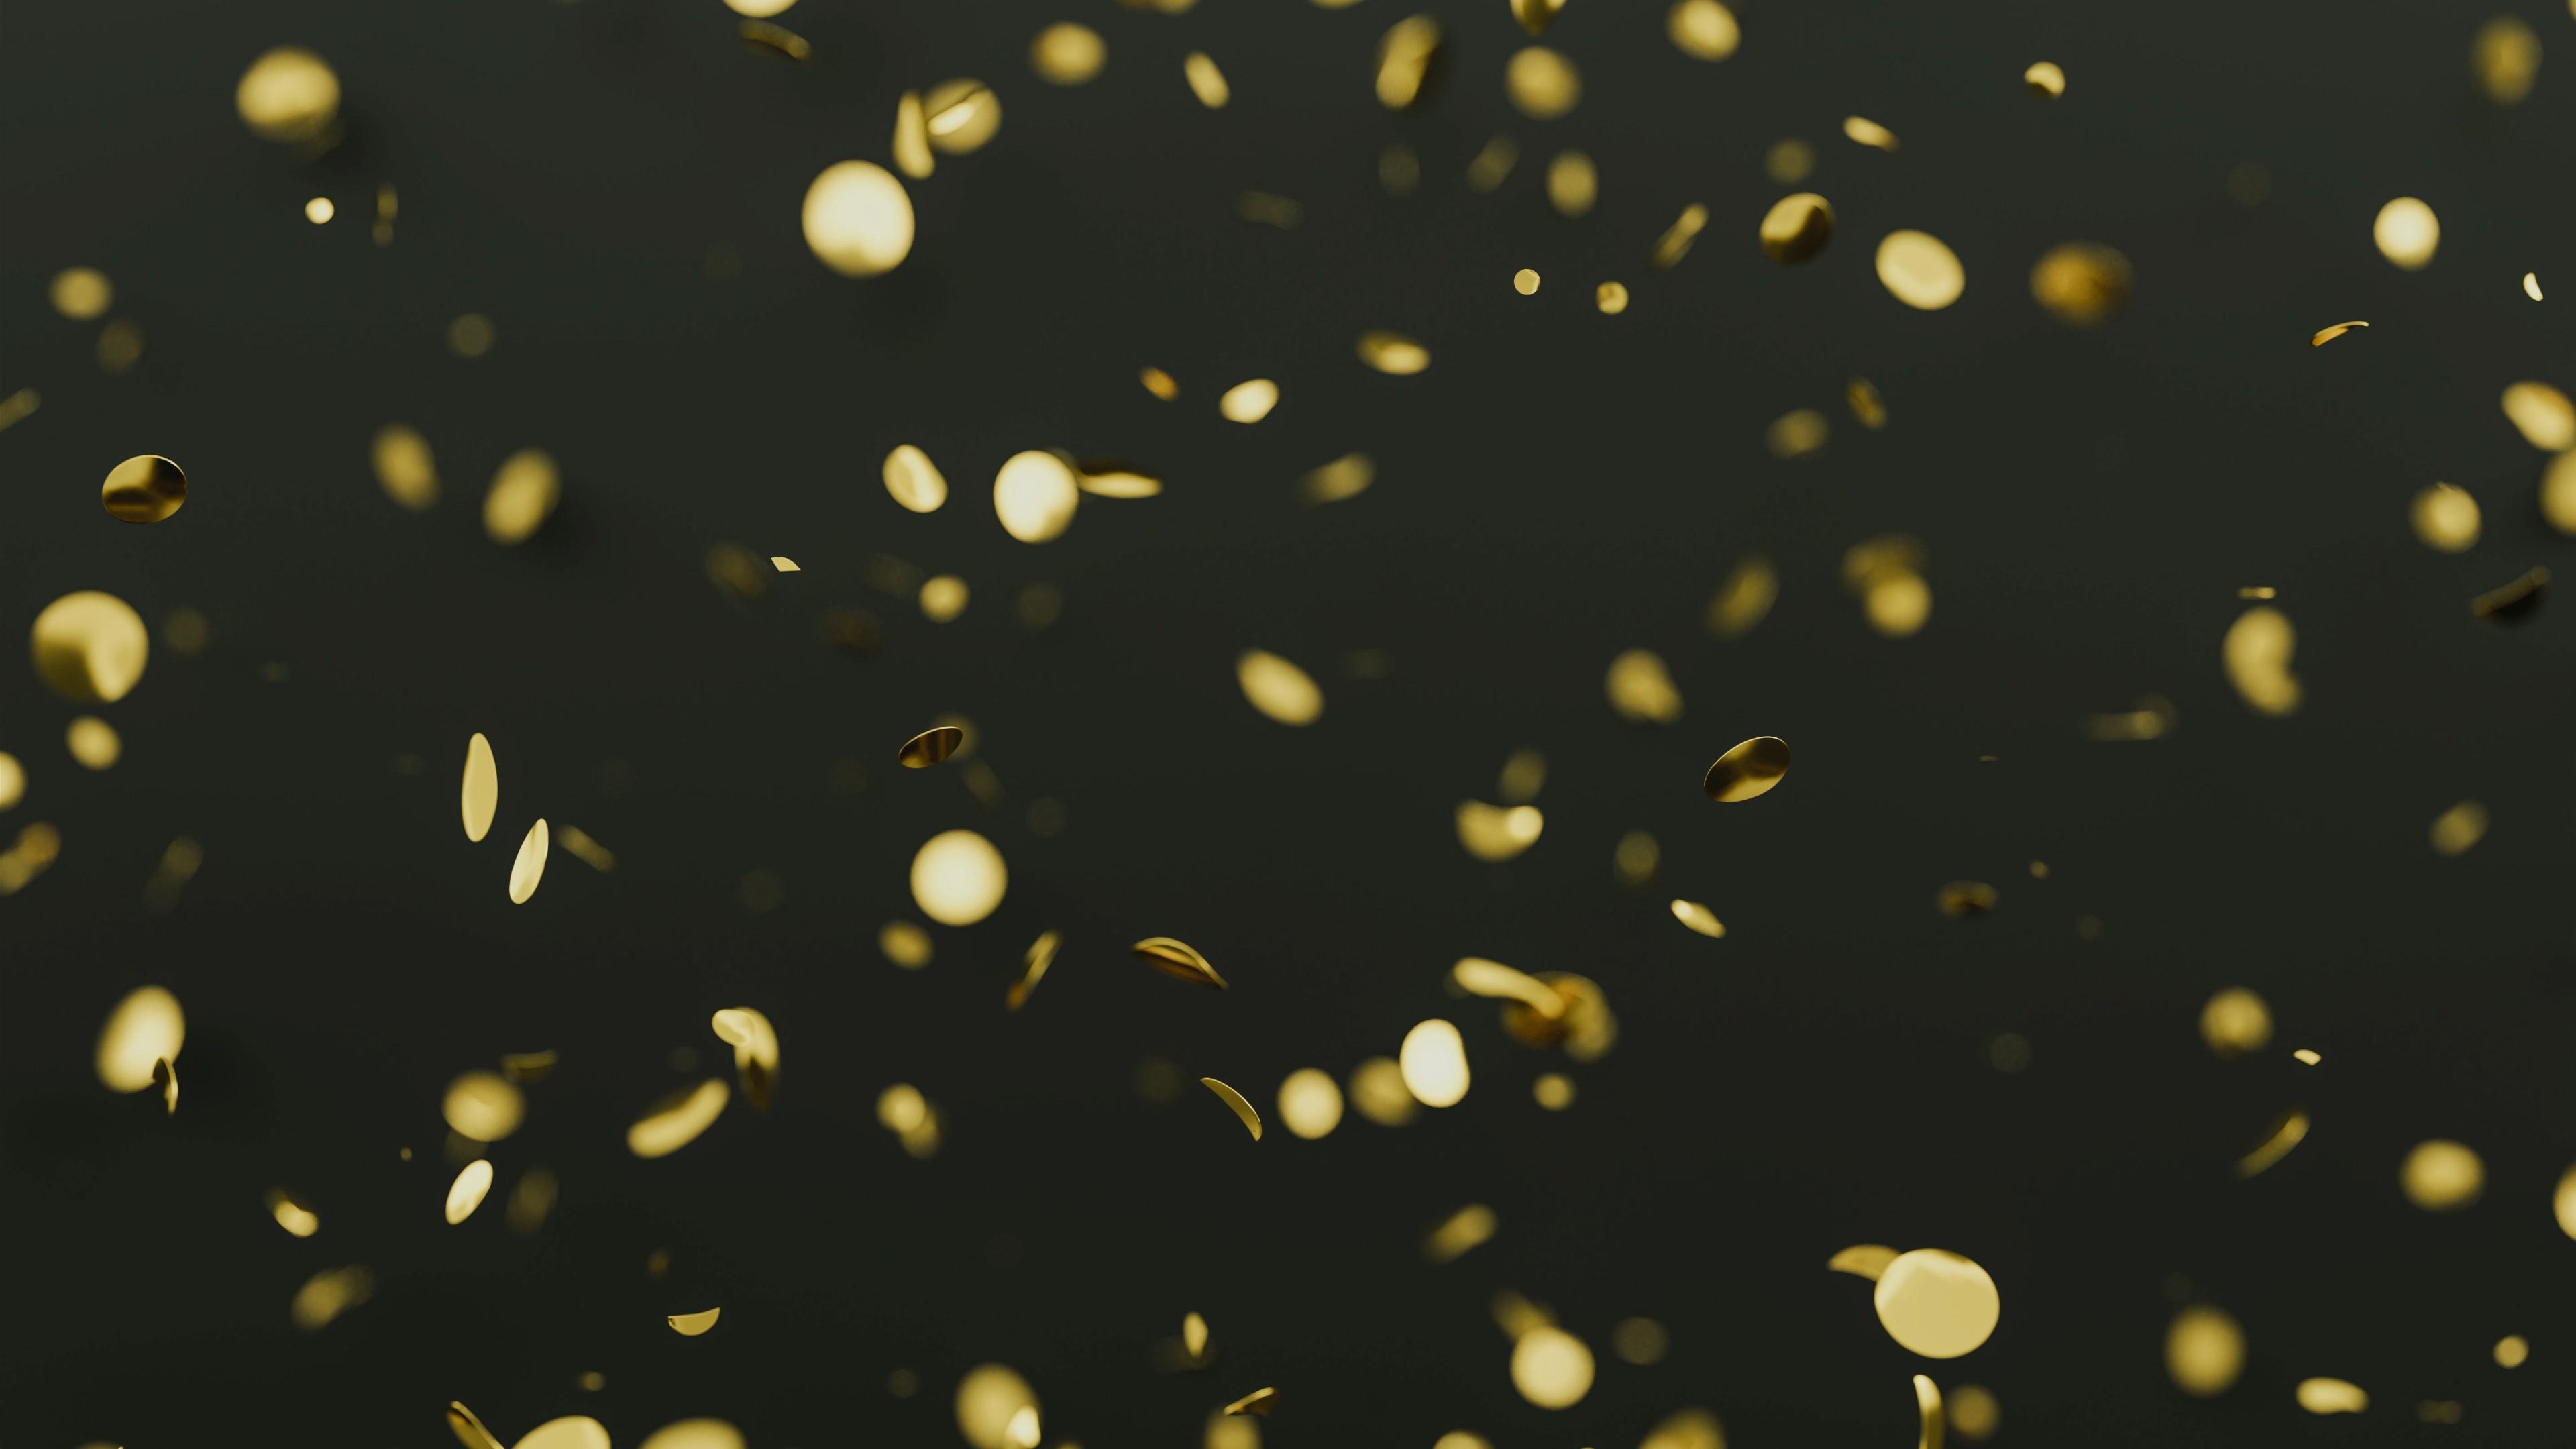 Golden glitters and confetti